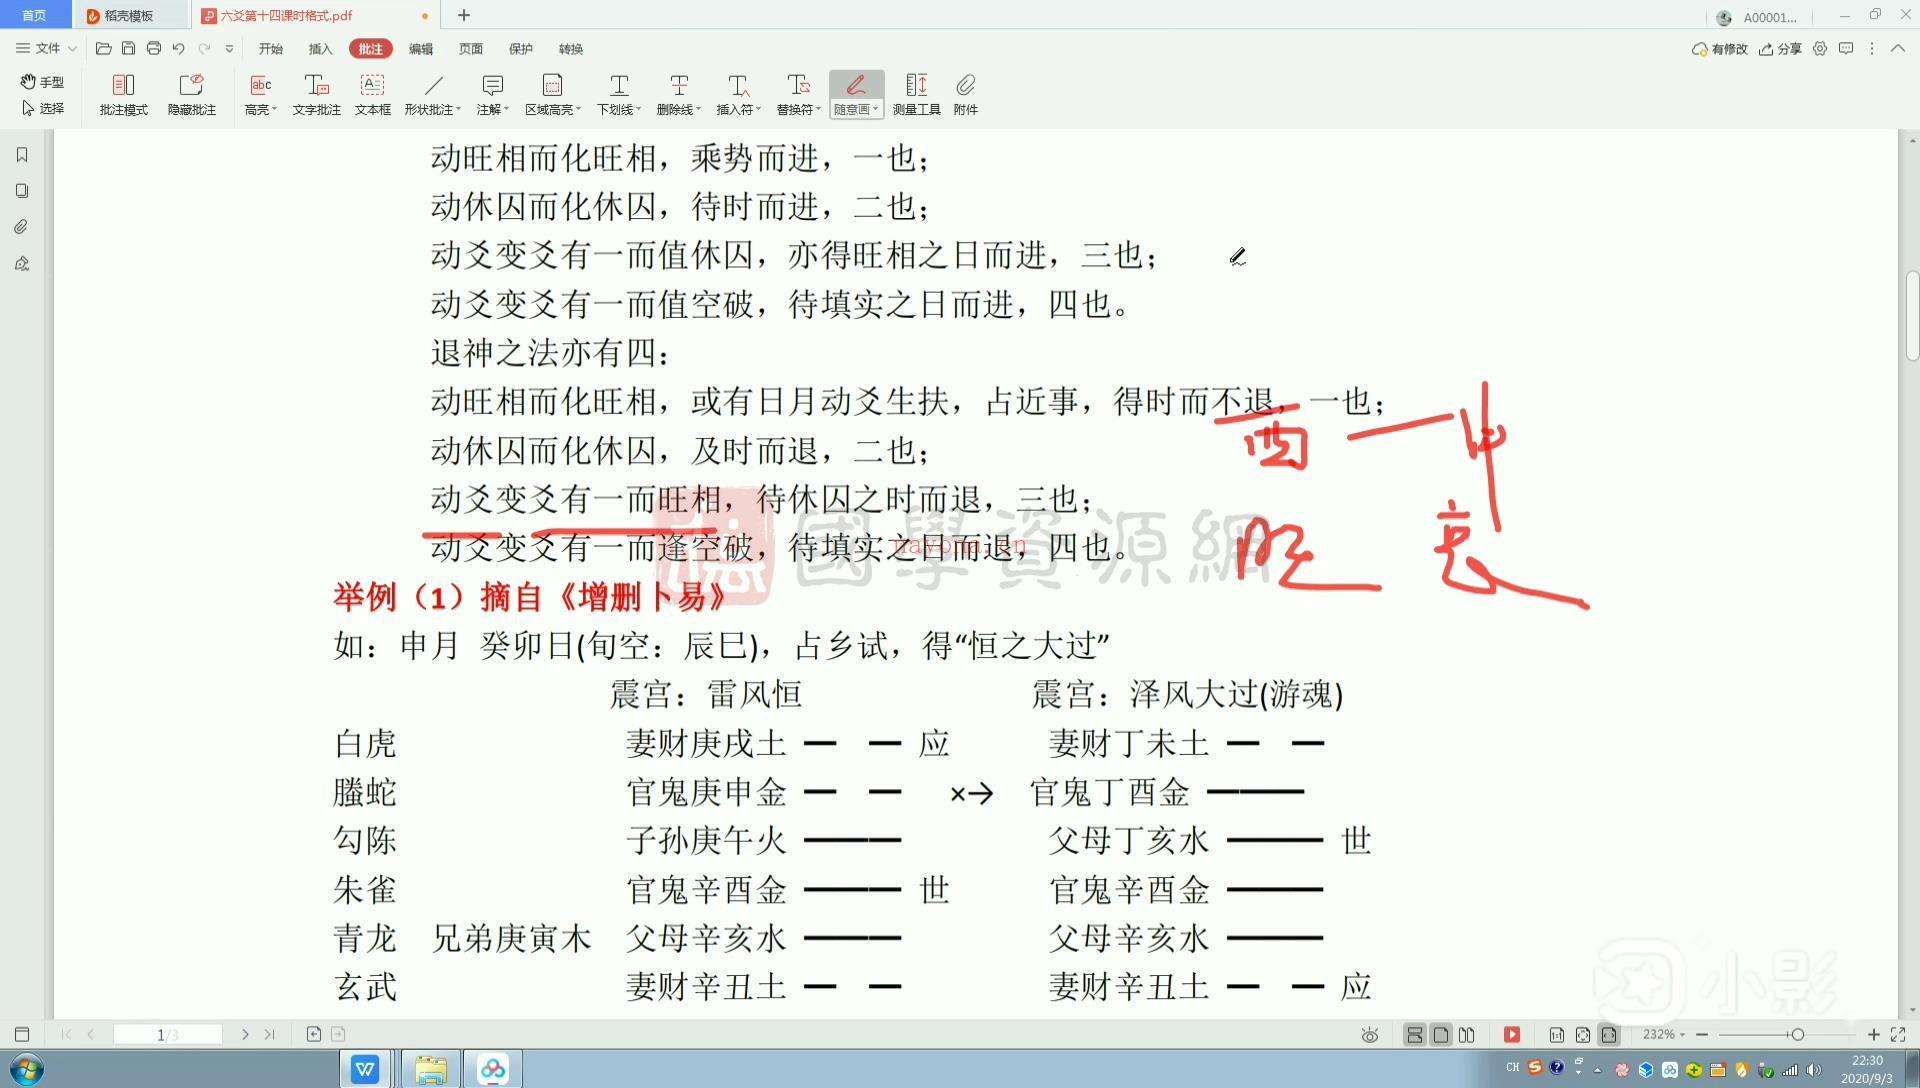 林来锦2020年六爻占卦理法课程视频22集+文档